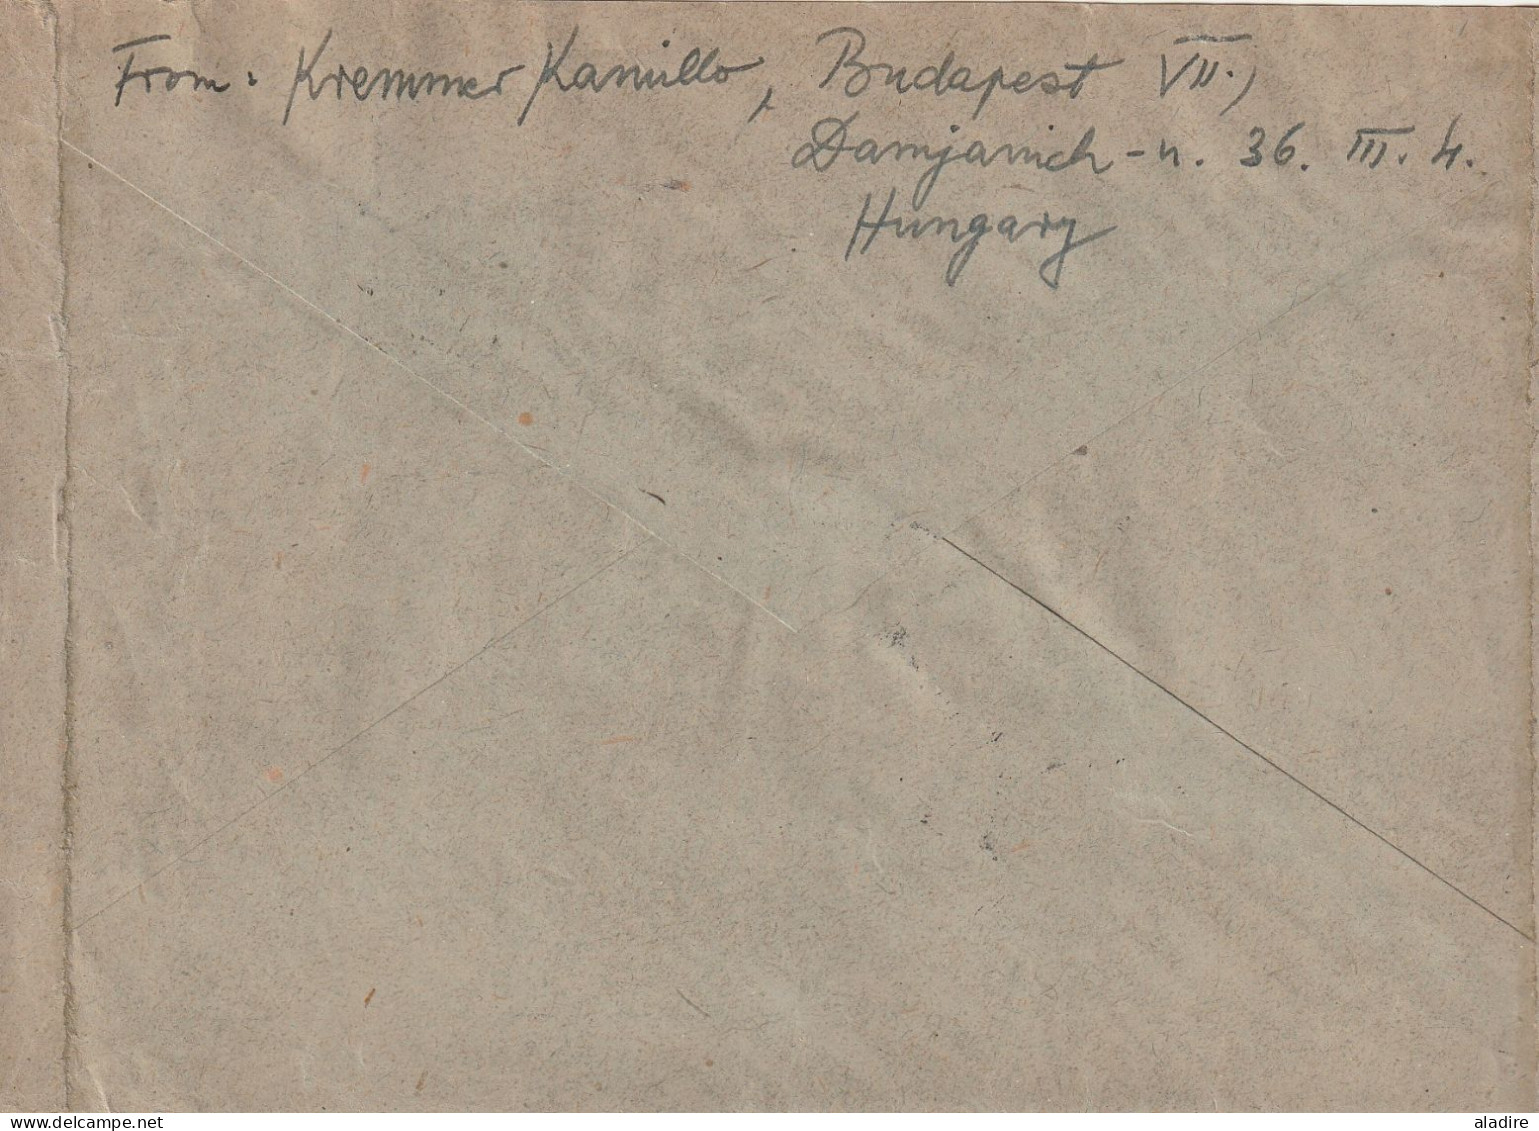 1914 / 1951 - HONGRIE - MAGYAR POSTA - lot de 12 enveloppes  et cartes  - 24 scans